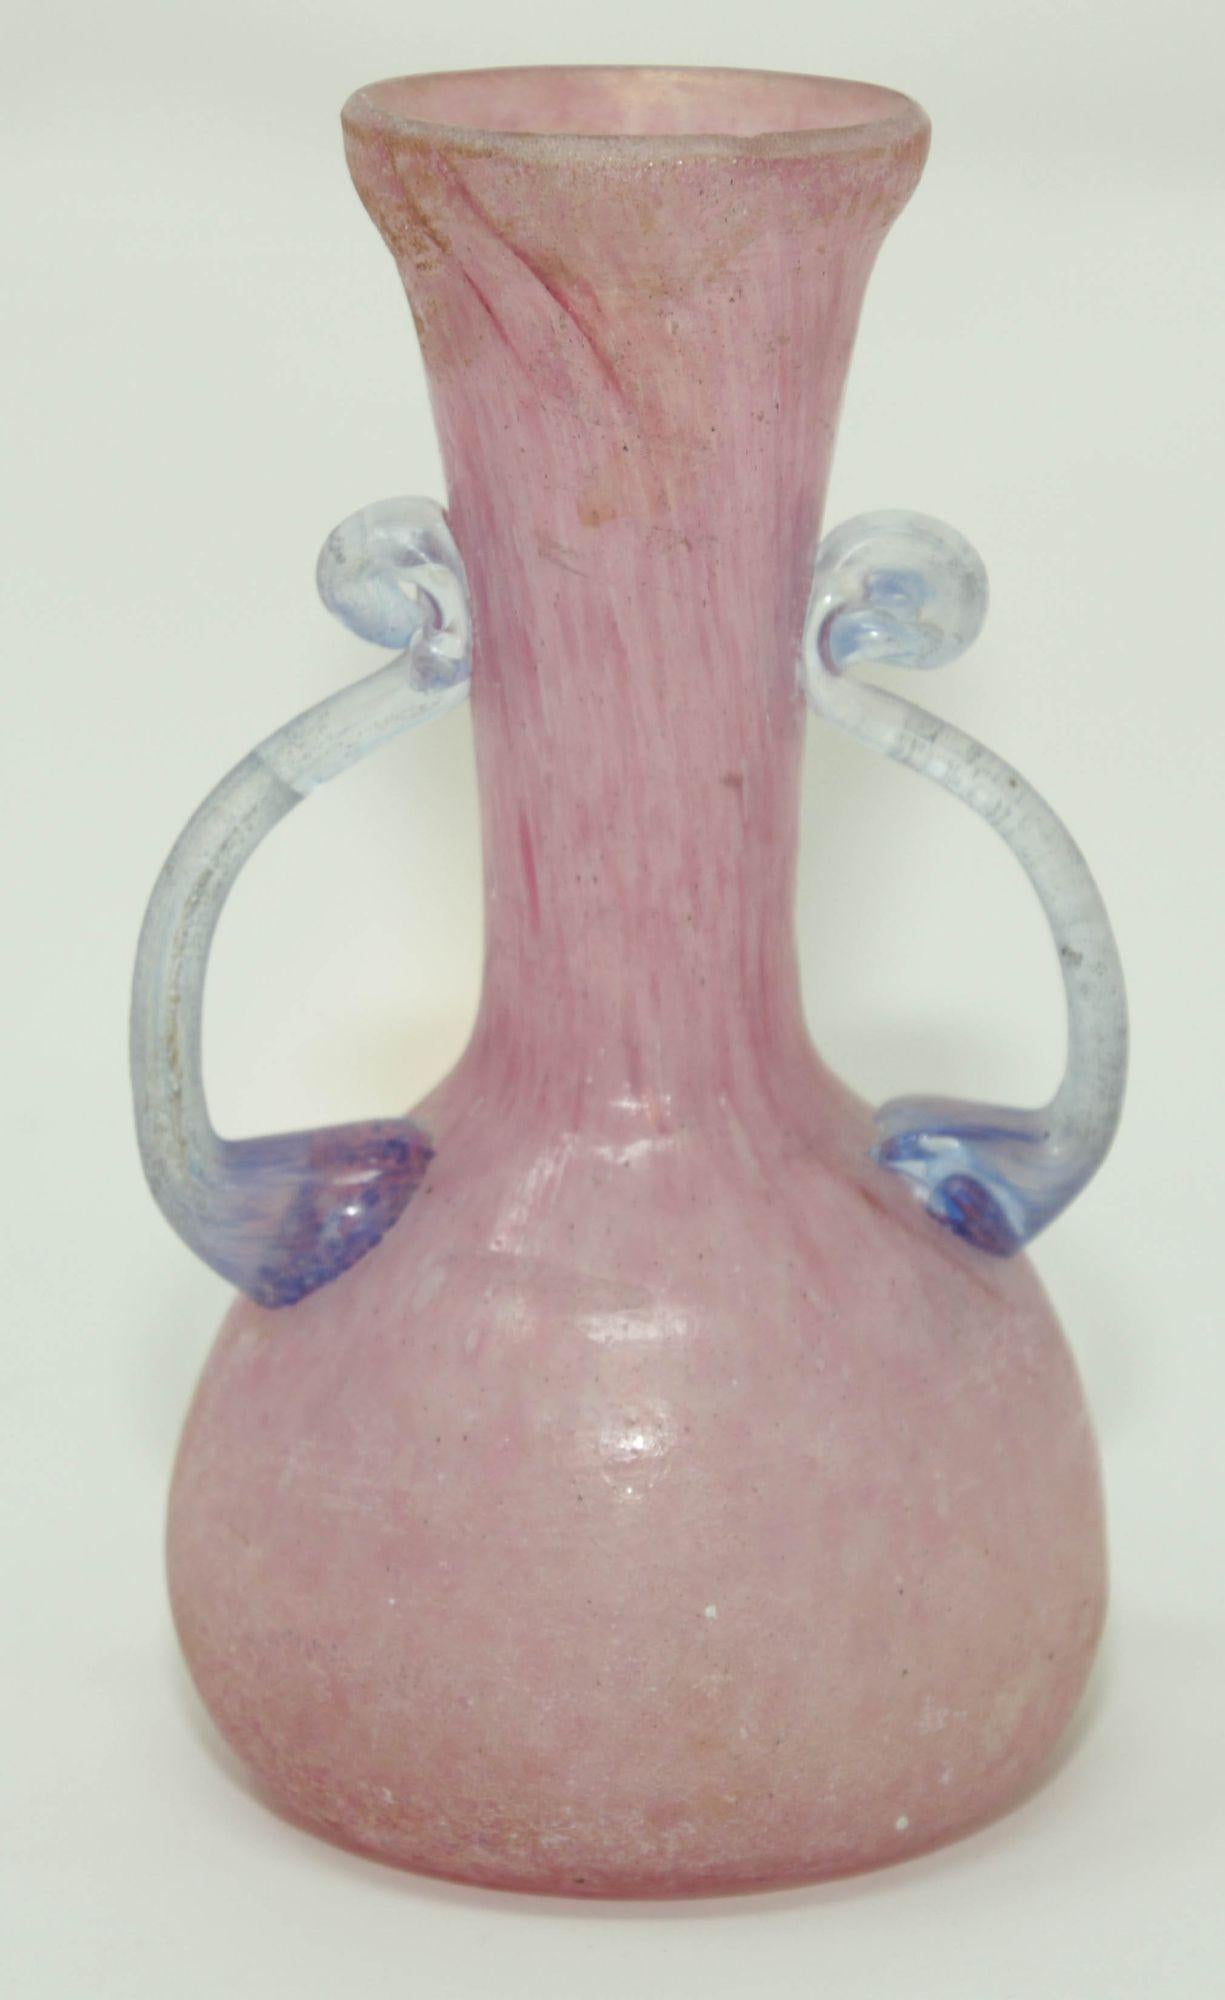 Murano Rosa und blaues Scavo Kunstglas Seguso Vetri d'Arte Murano, Italien, 1960er Jahre
Murano kleine Vase in rosa Glas mit blauen Griffen, sehr zarte Arbeit mit schönen schillernden Reflexen auf der ganzen Vase und eine schöne Transparenz auf den